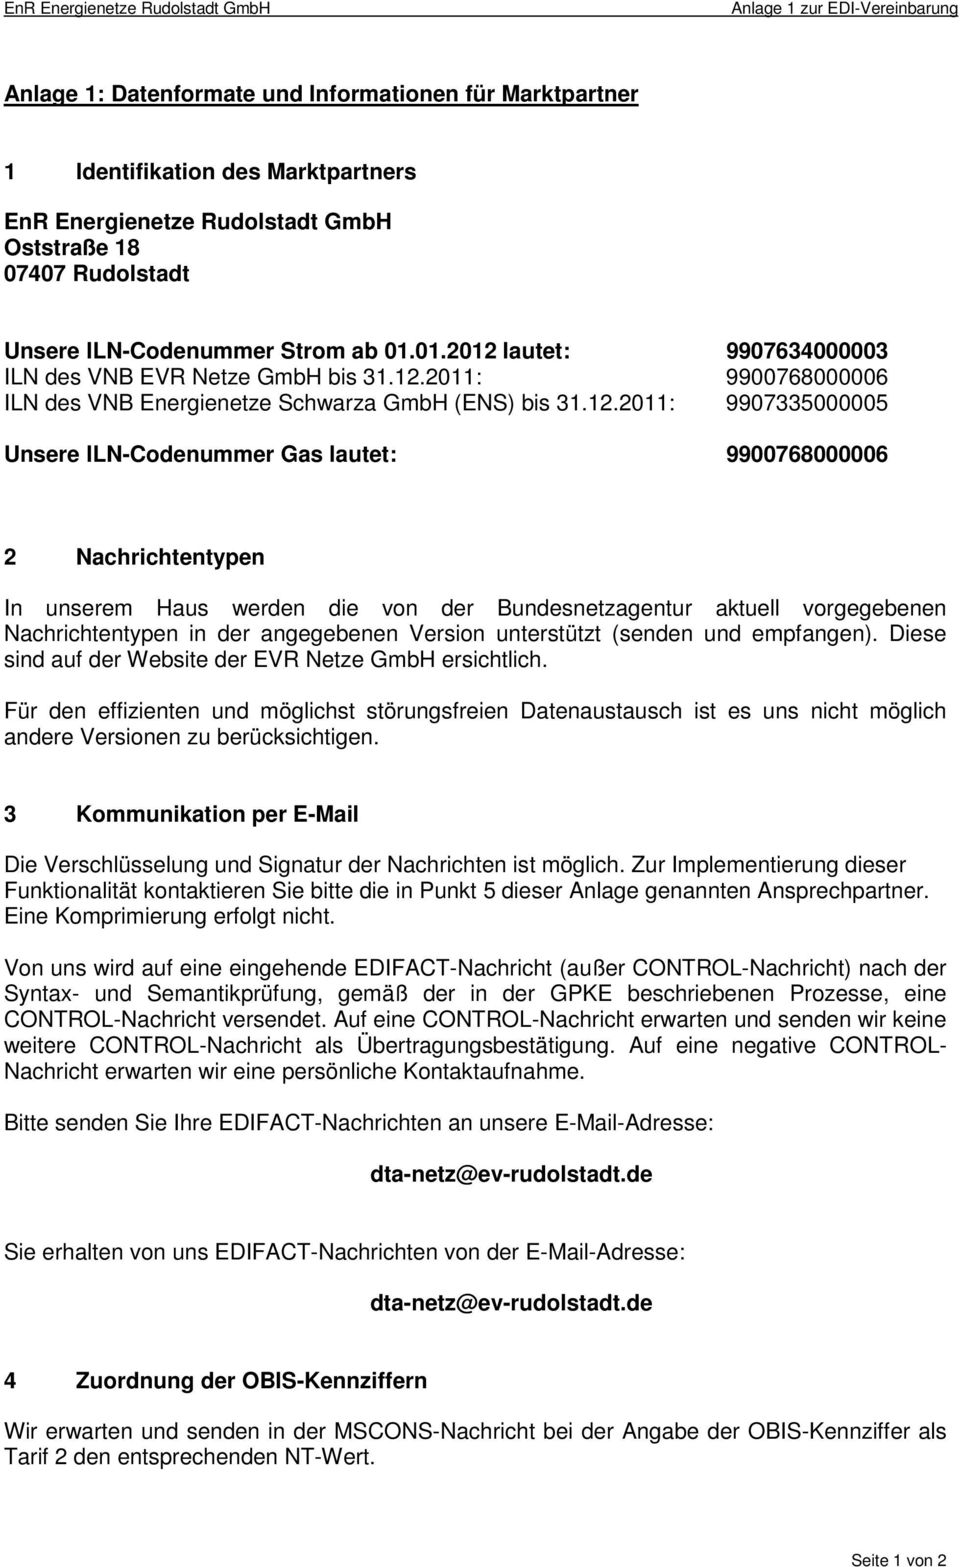 lautet: 9907634000003 ILN des VNB EVR Netze GmbH bis 31.12.